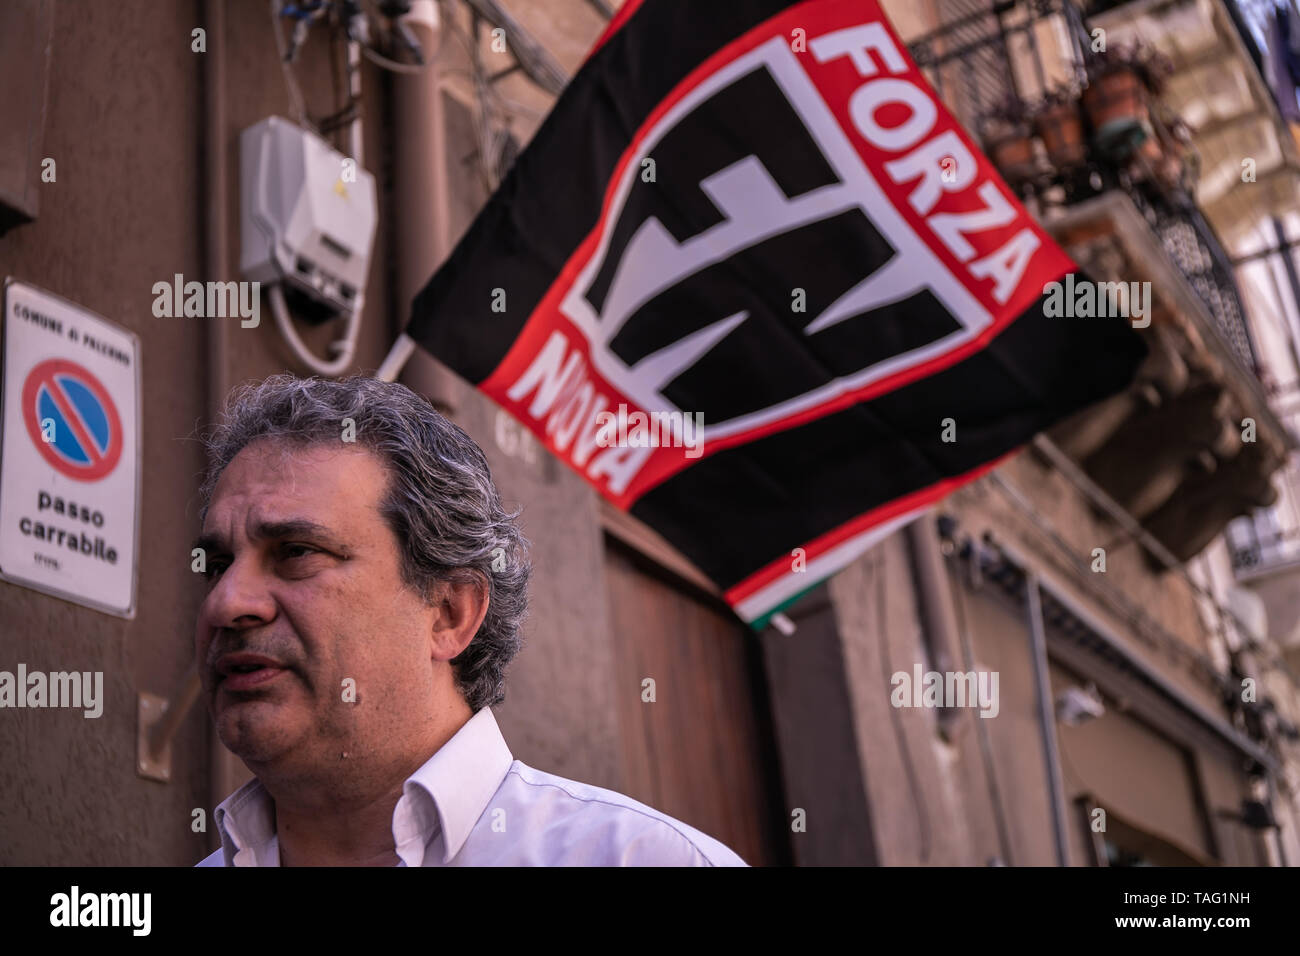 Palermo, Italy. 24th May, 2019. Roberto Fiore, leader of Forza Nuova, in Palermo. Credit: Antonio Melita/Pacific Press/Alamy Live News Stock Photo